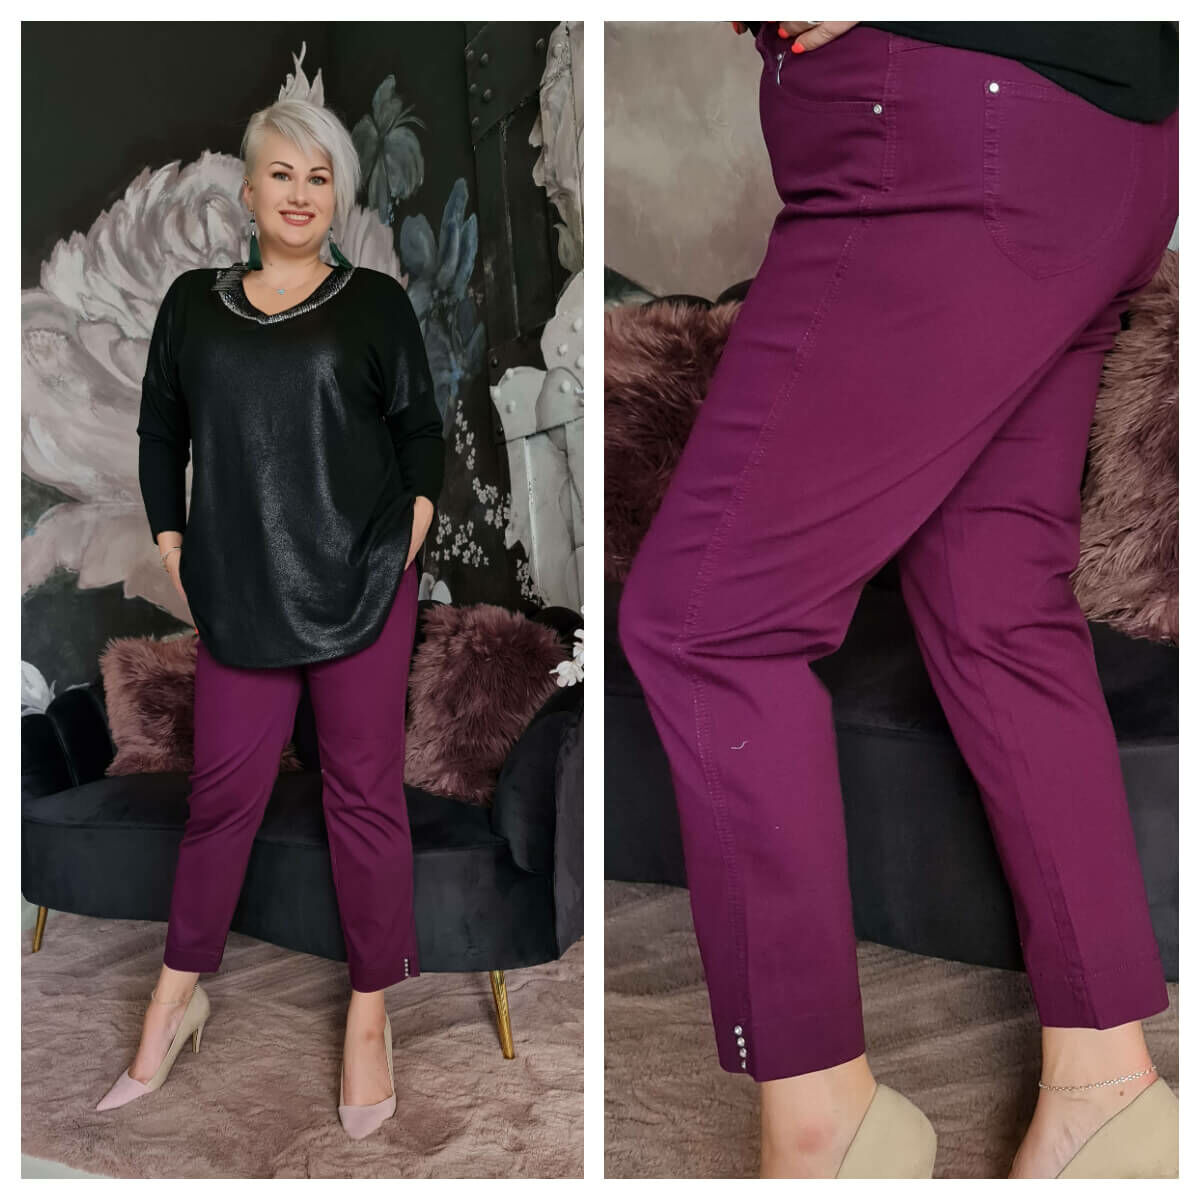 Janice nadrág - plus size lila nadrág